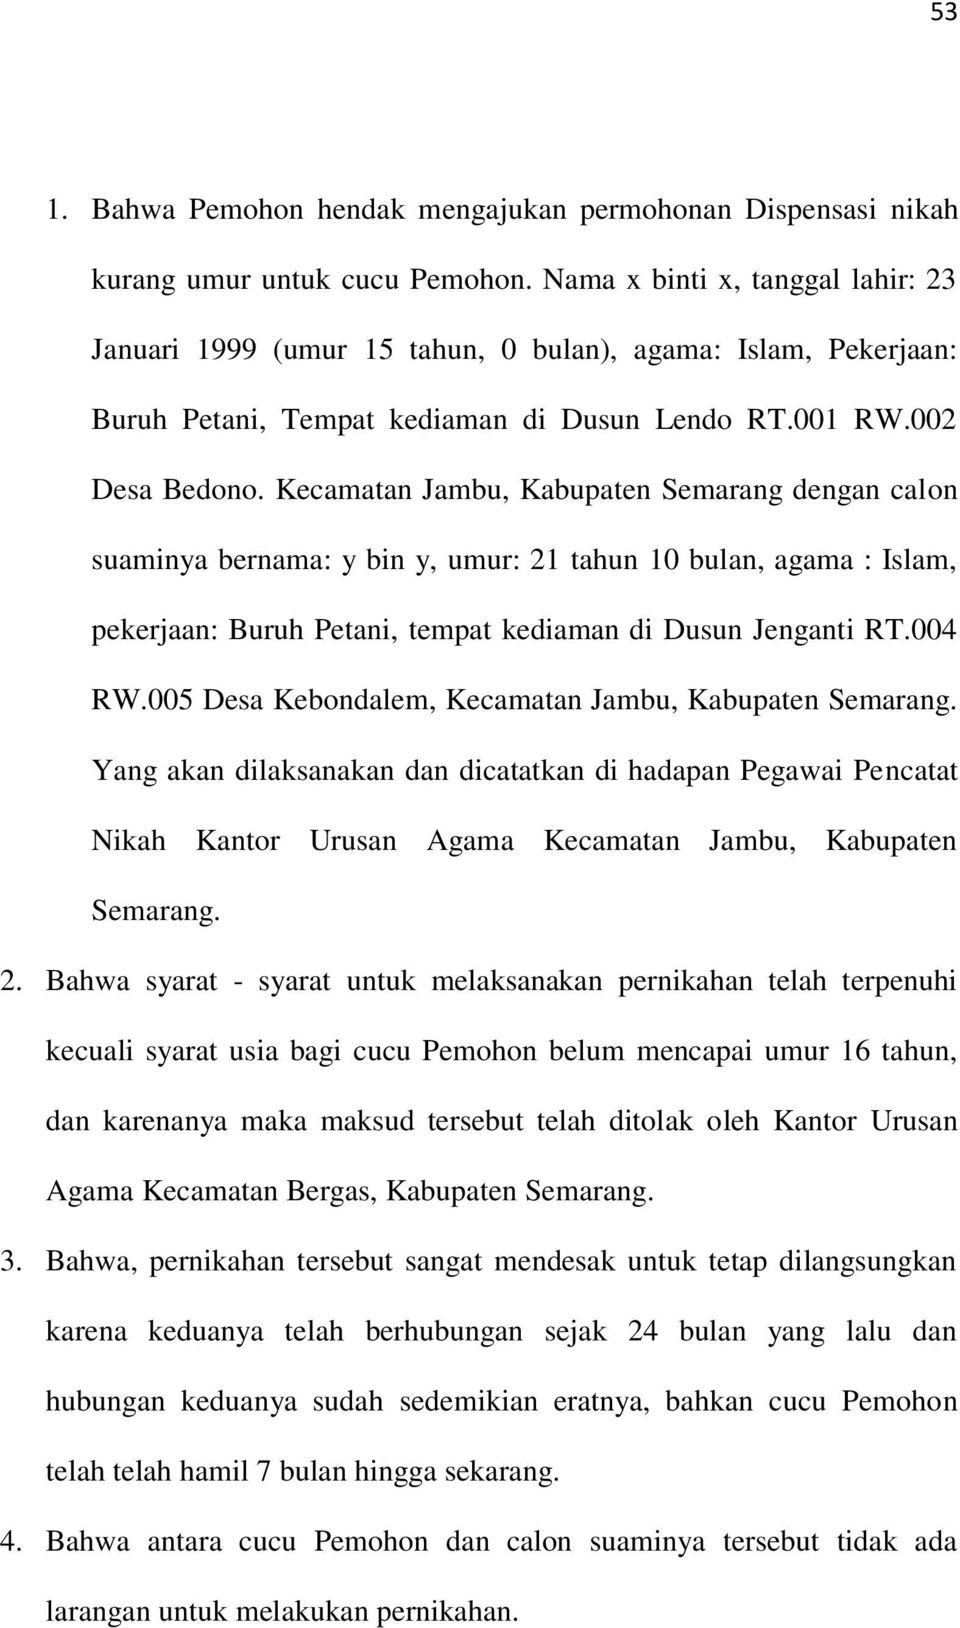 Kecamatan Jambu, Kabupaten Semarang dengan calon suaminya bernama: y bin y, umur: 21 tahun 10 bulan, agama : Islam, pekerjaan: Buruh Petani, tempat kediaman di Dusun Jenganti RT.004 RW.